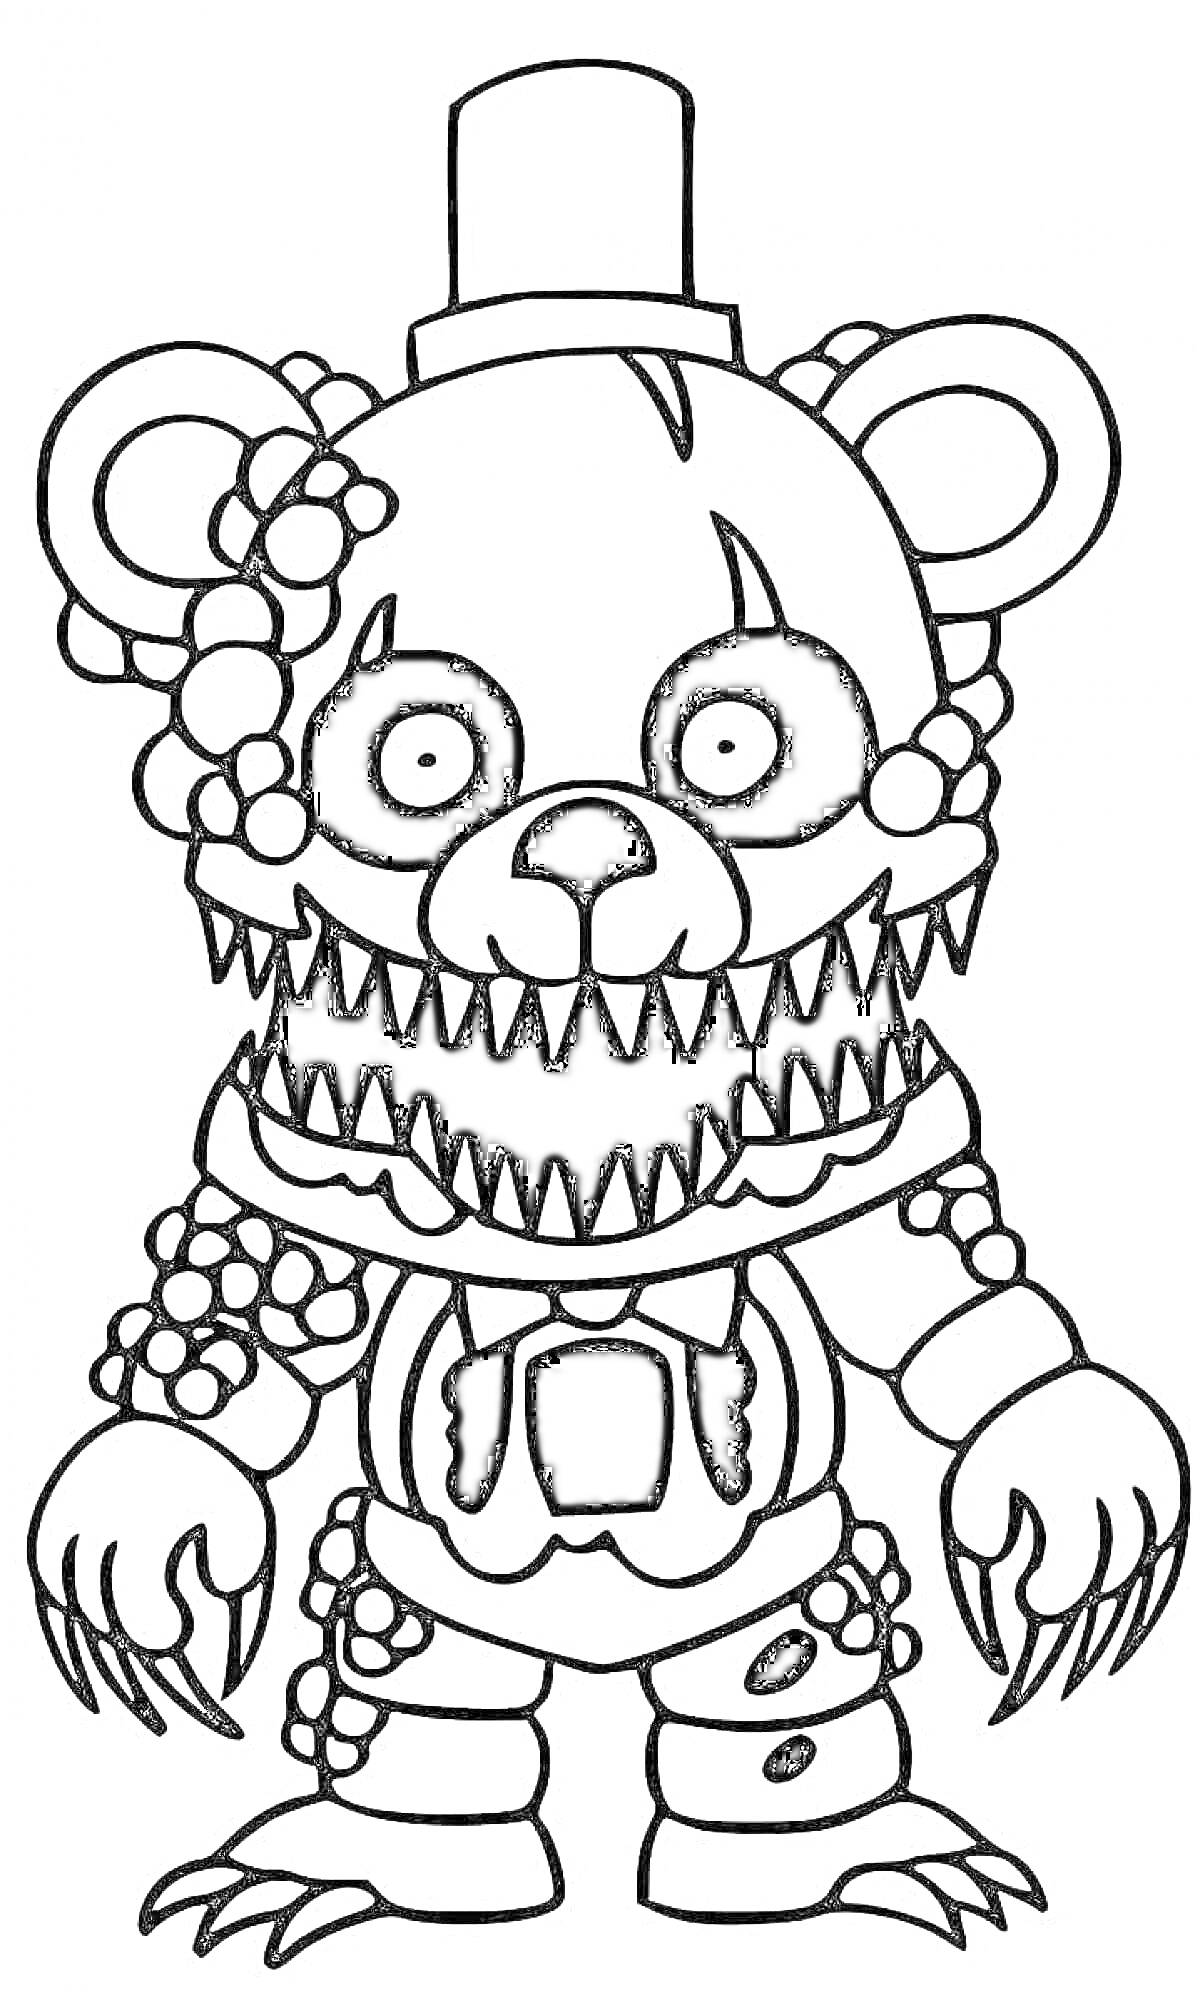 Раскраска Черно-белый рисунок Глэм Рок Бонни (ФНАФ 9) в виде аниматроника с острыми зубами, шляпой, когтями и украшениями на теле